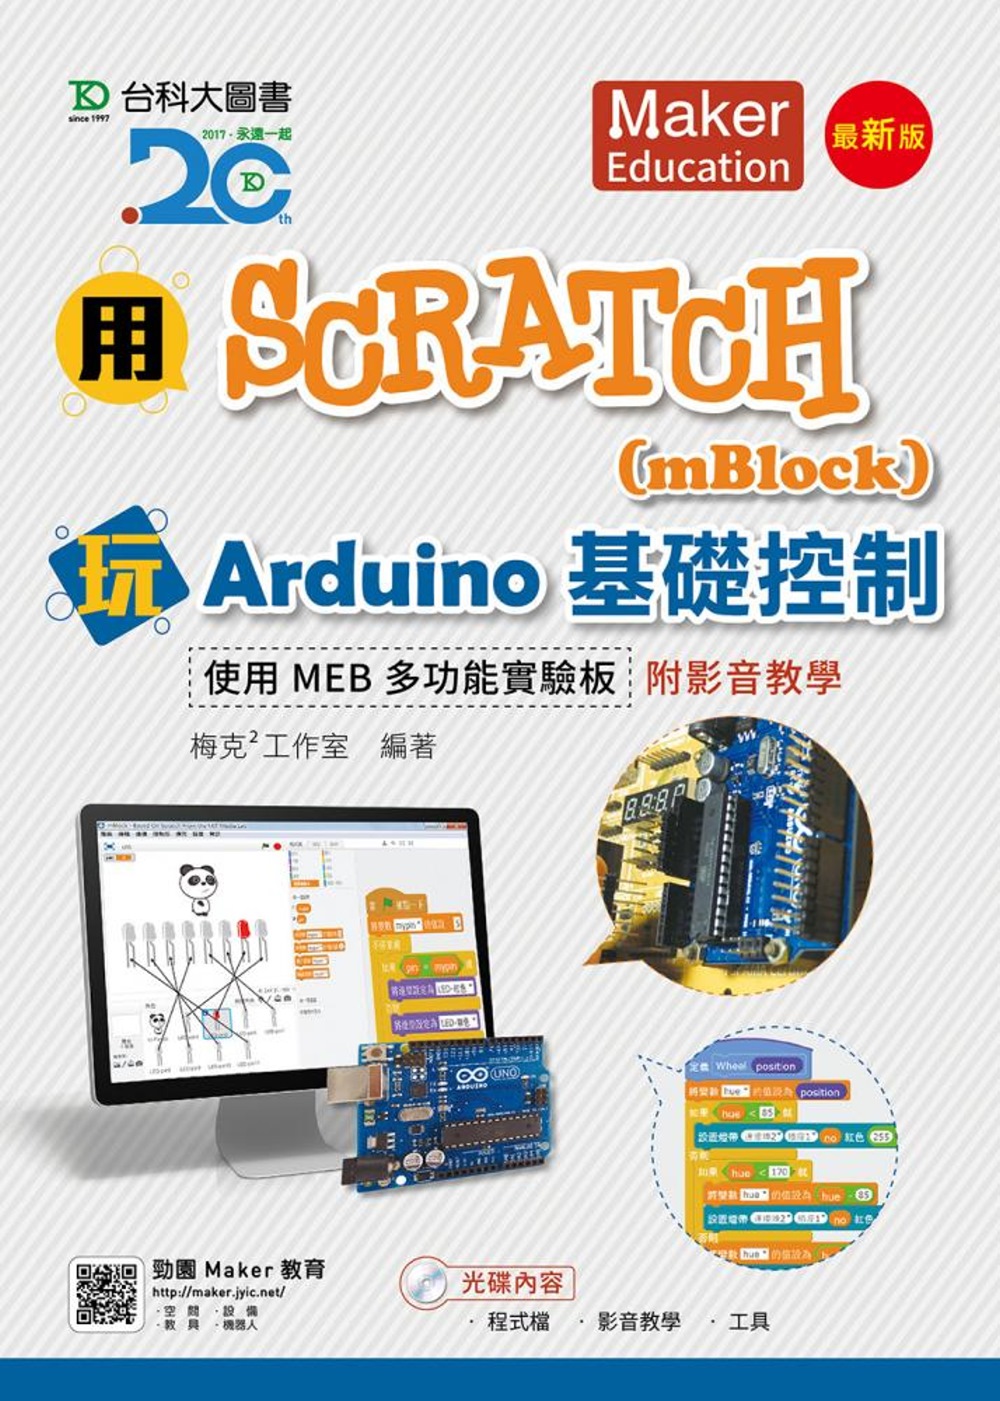 用Scratch(mBlock)玩Arduino基礎控制-使...